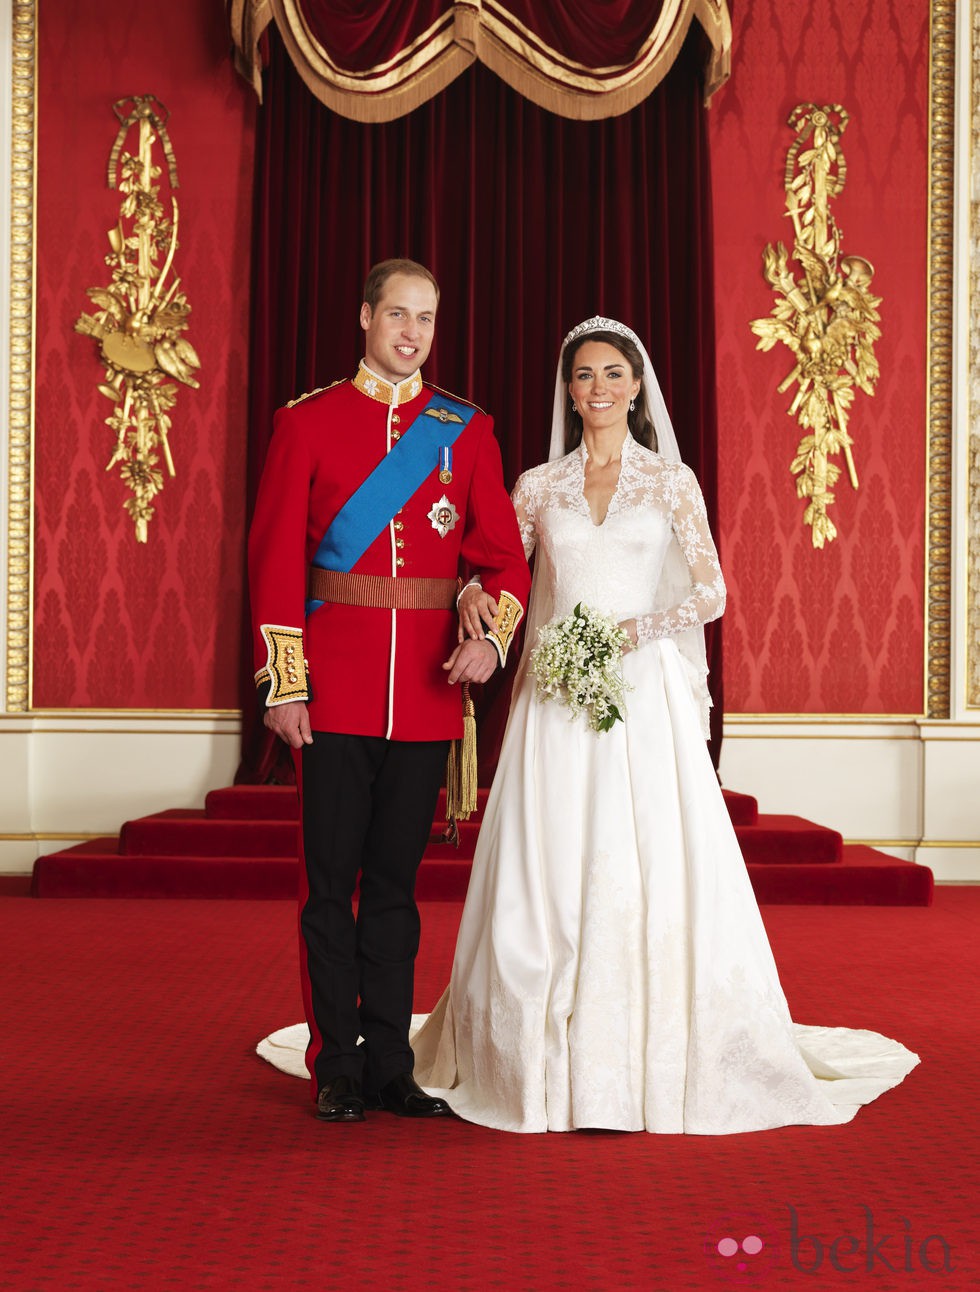 Foto oficial de la boda de los Duques de Cambridge